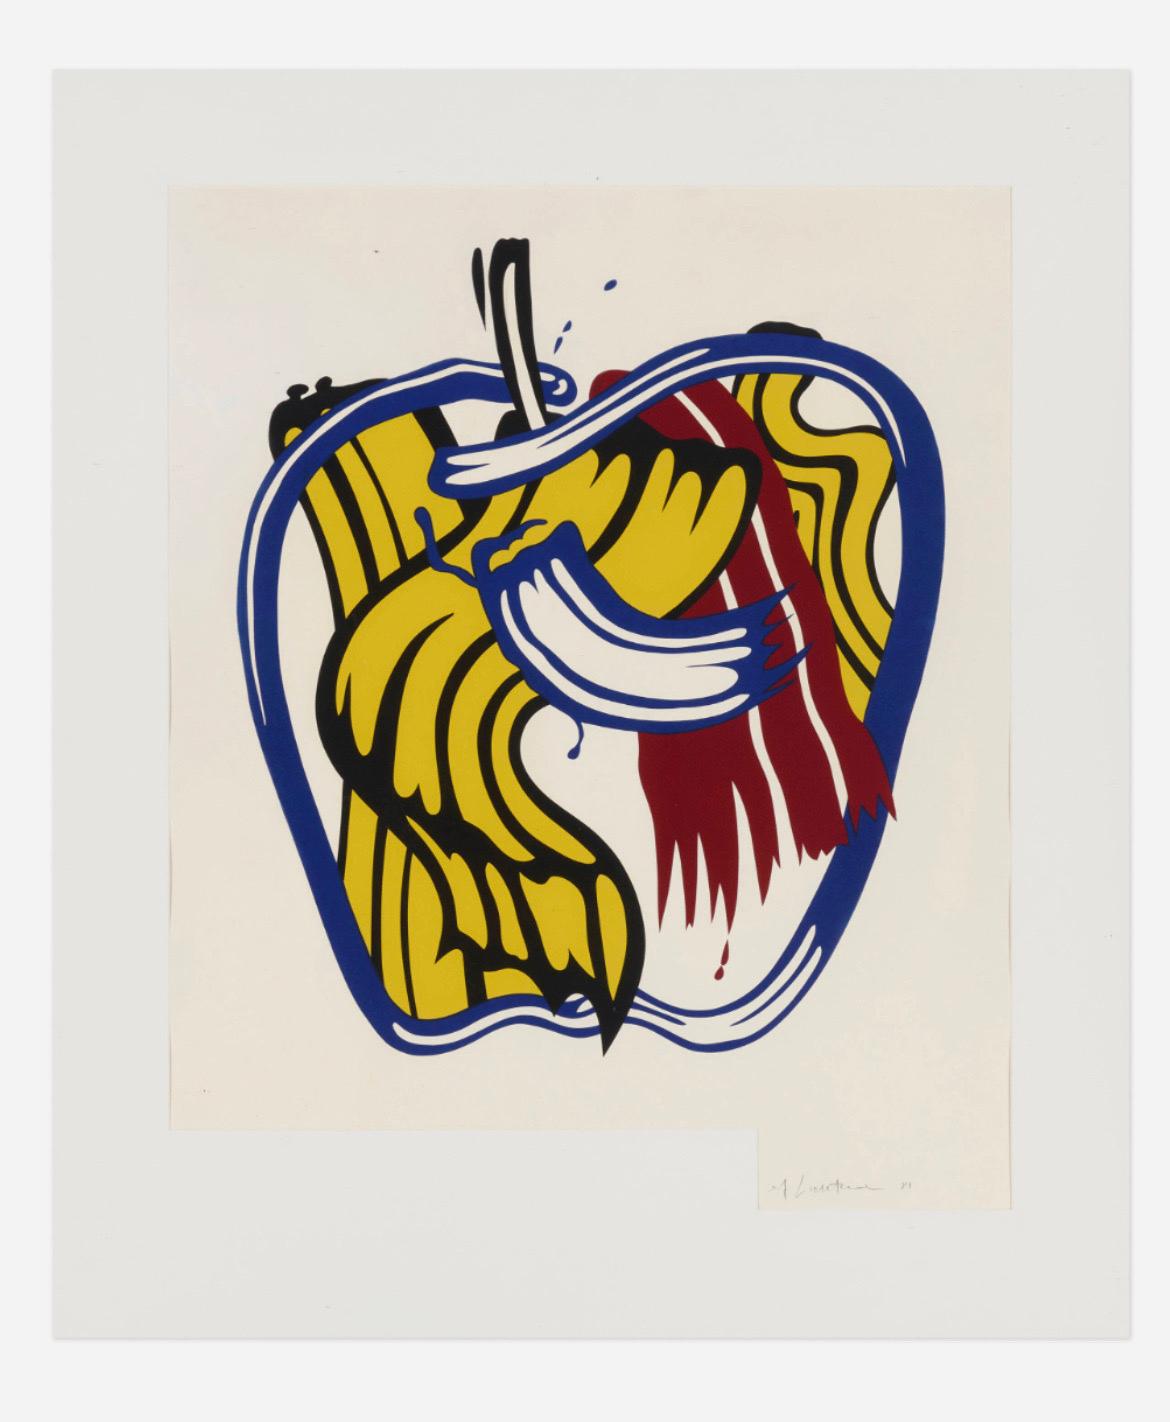 Lithographie de Roy Lichtenstein pour le St. Louis Art Museum, 1981.
Musée d'art américain du Whitney
22 septembre - 29 novembre 1981
Organisée par le musée d'art de Saint Louis
grâce au soutien généreux de la Fondation American Express.
Le National